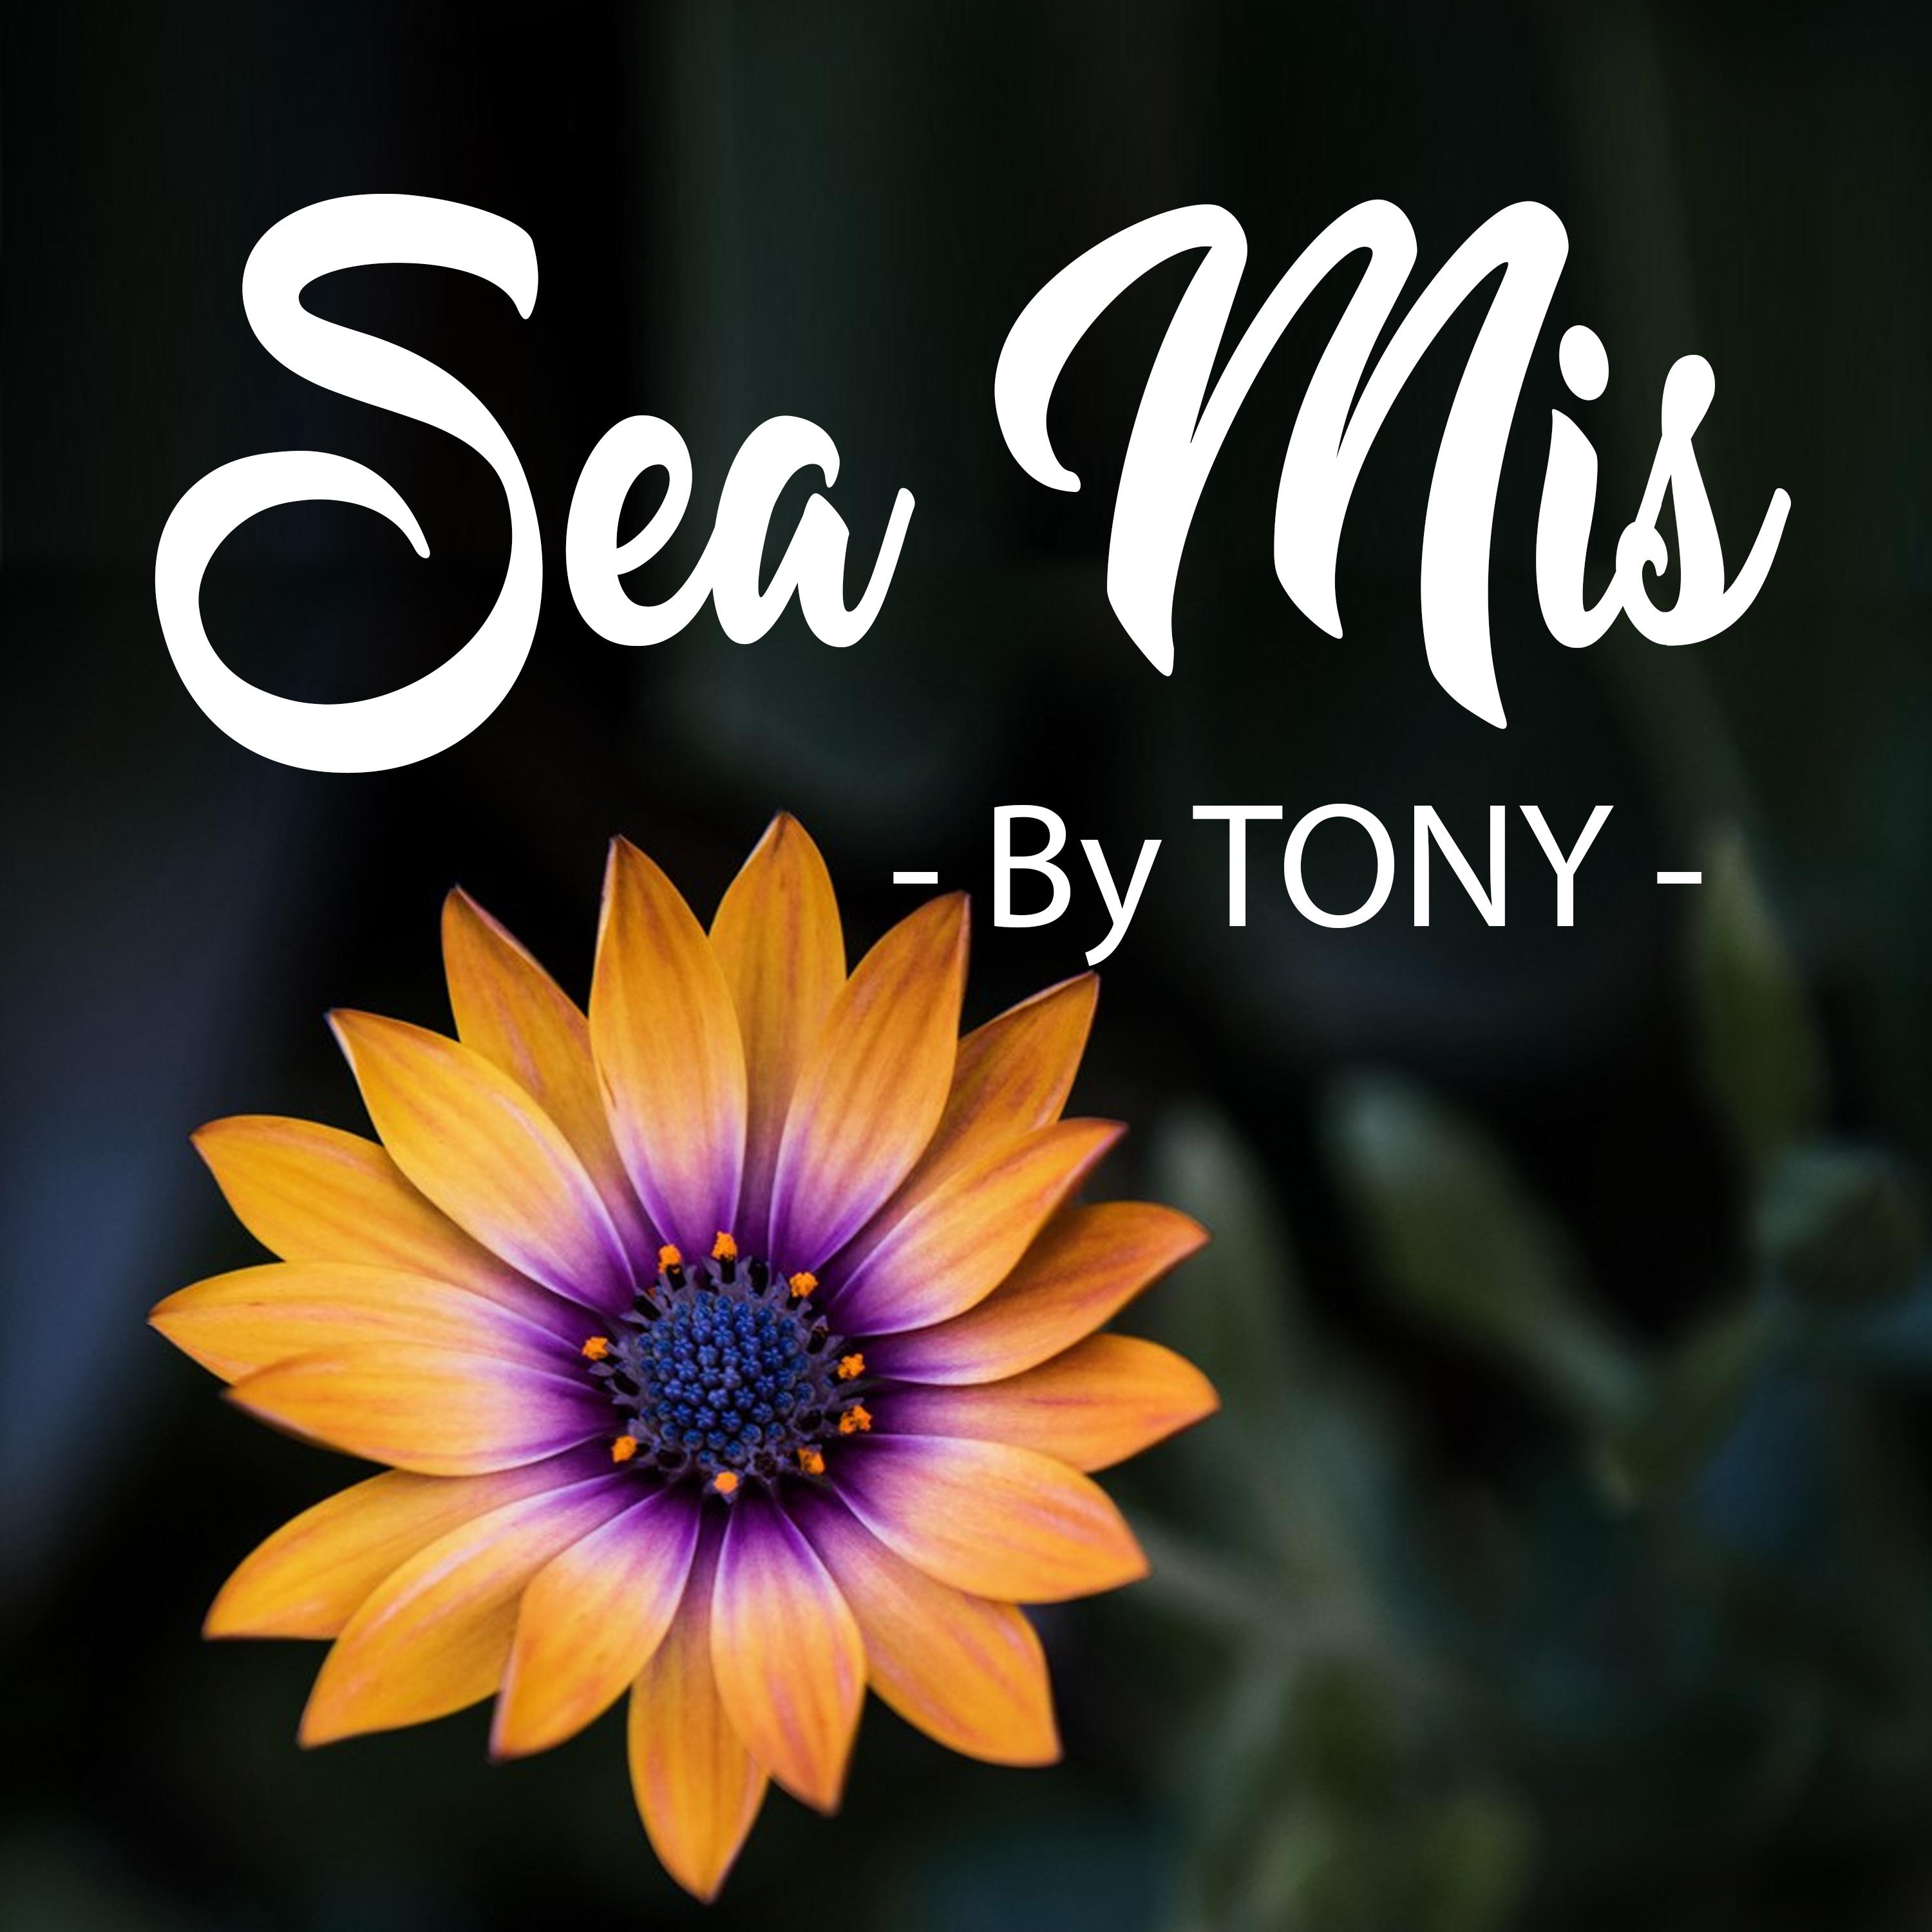 Tony - Sea Mis